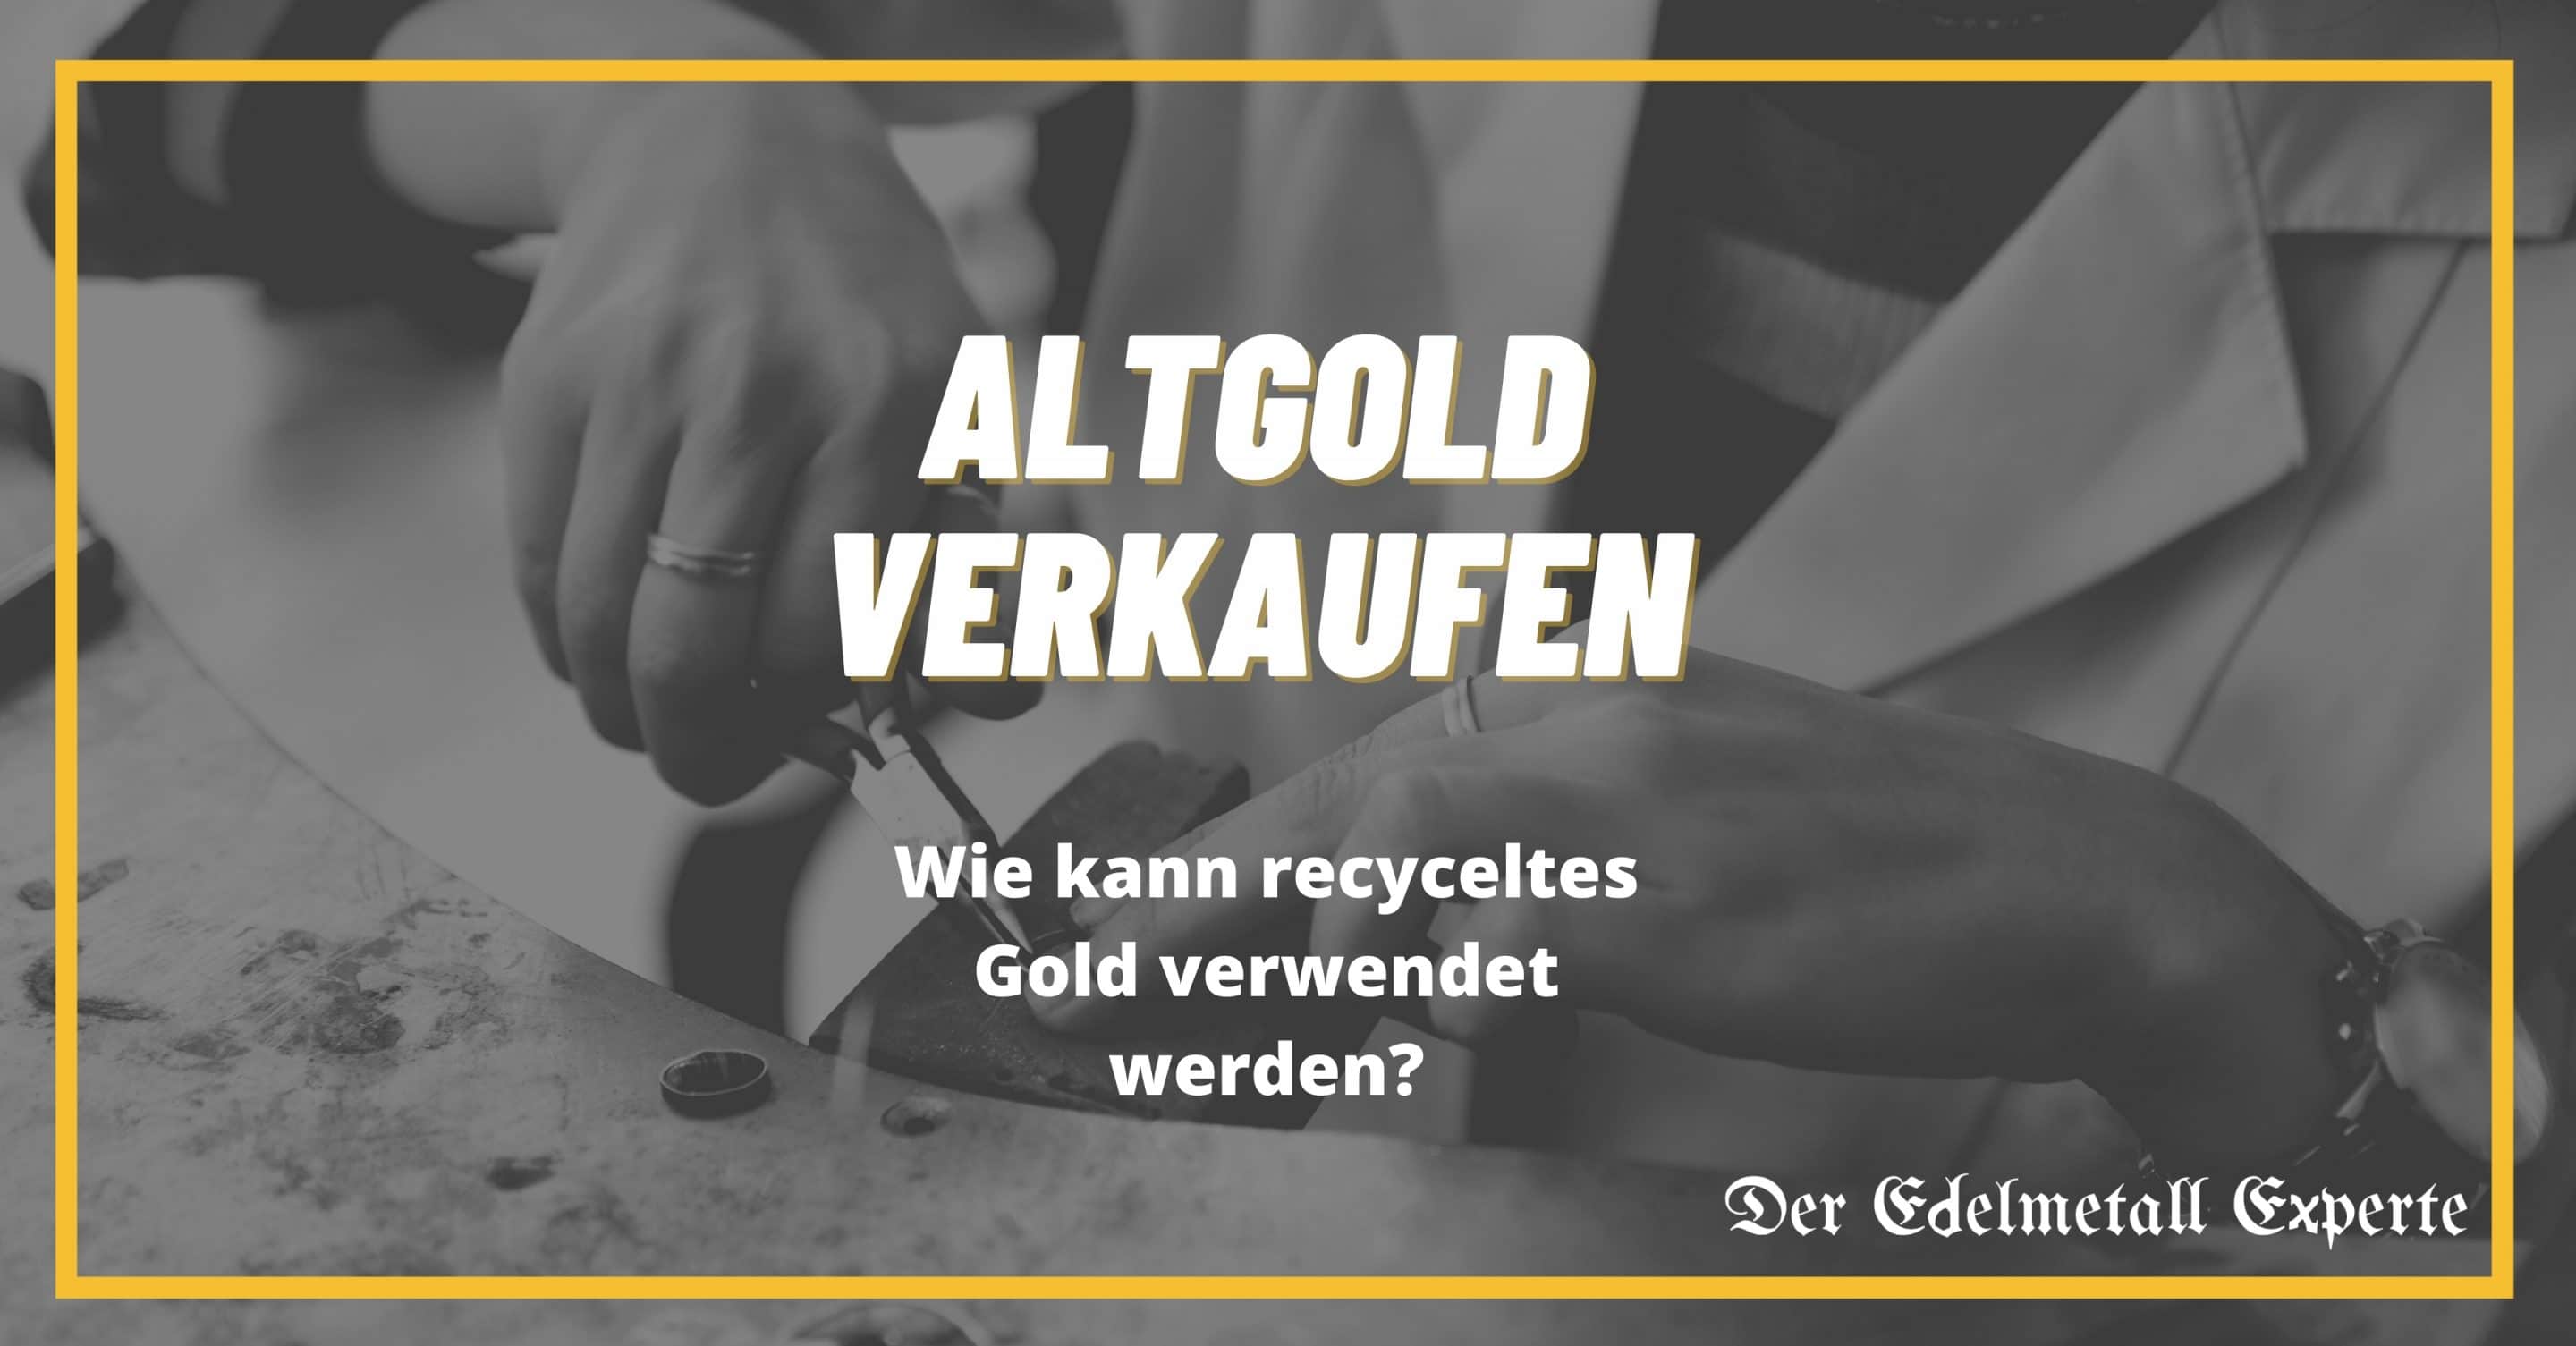 Altgold verkaufen